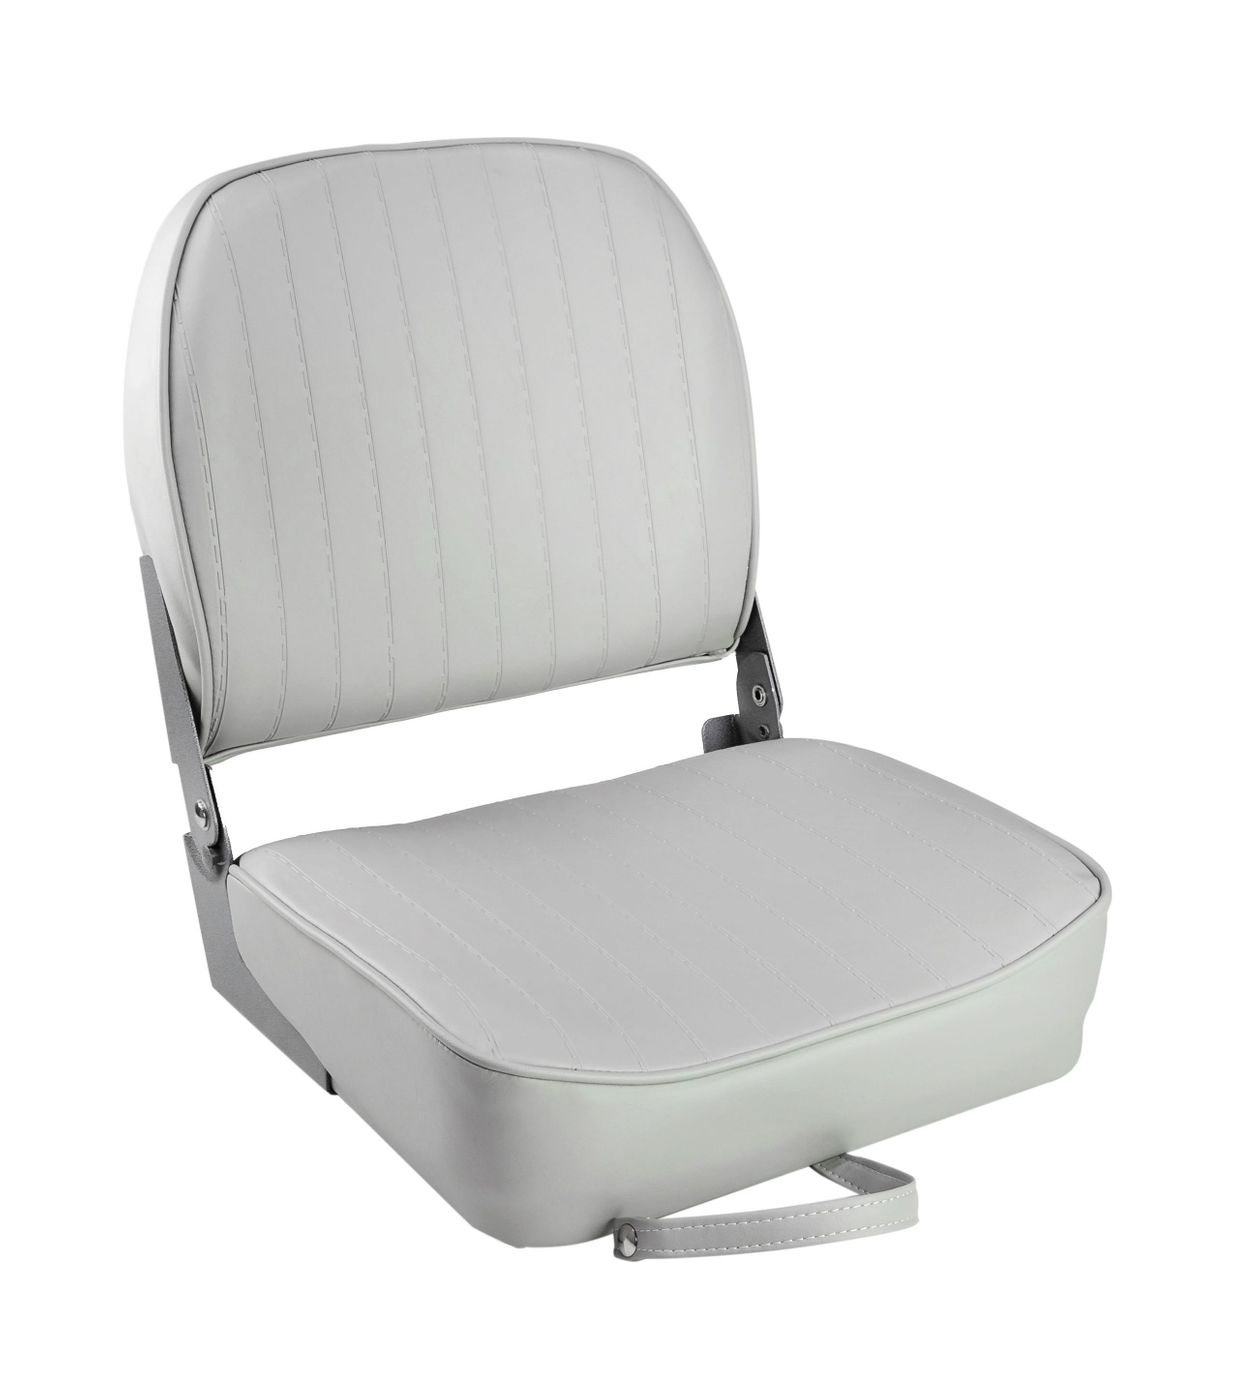 Кресло складное мягкое ECONOMY с низкой спинкой, цвет серый 1040623 кресло складное мягкое economy с низкой спинкой серый 1040623